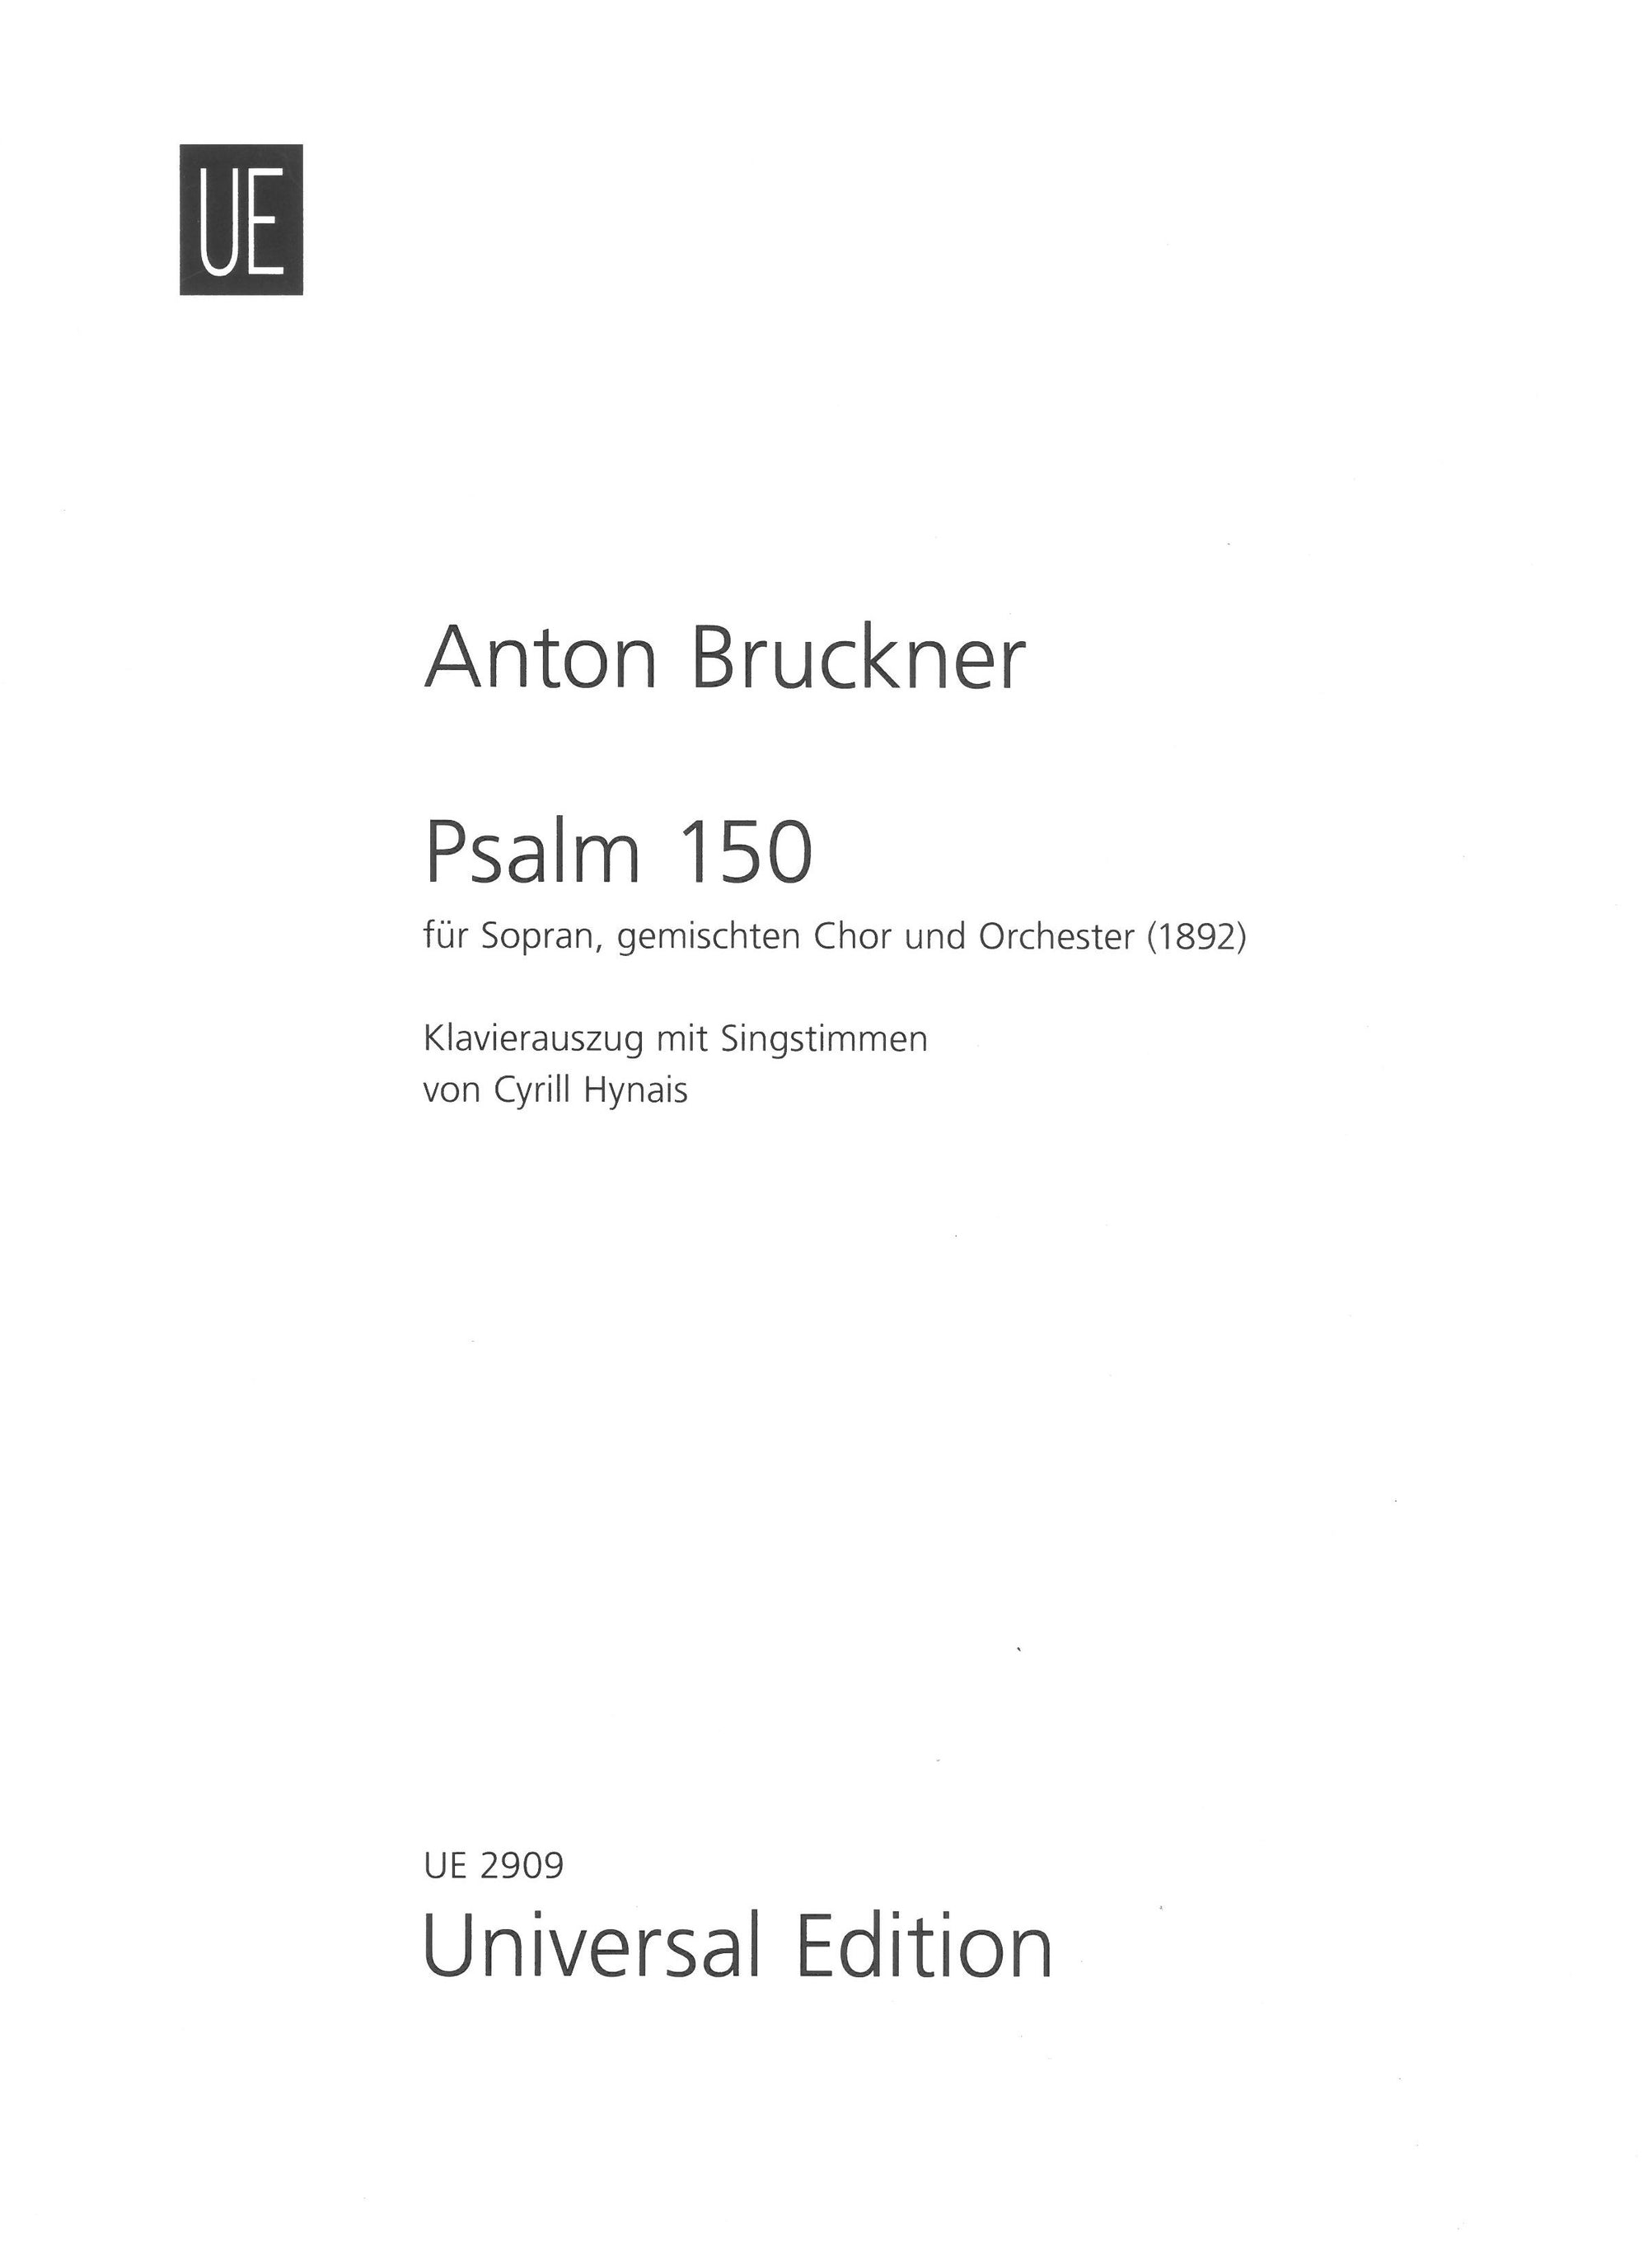 Bruckner: Psalm 150